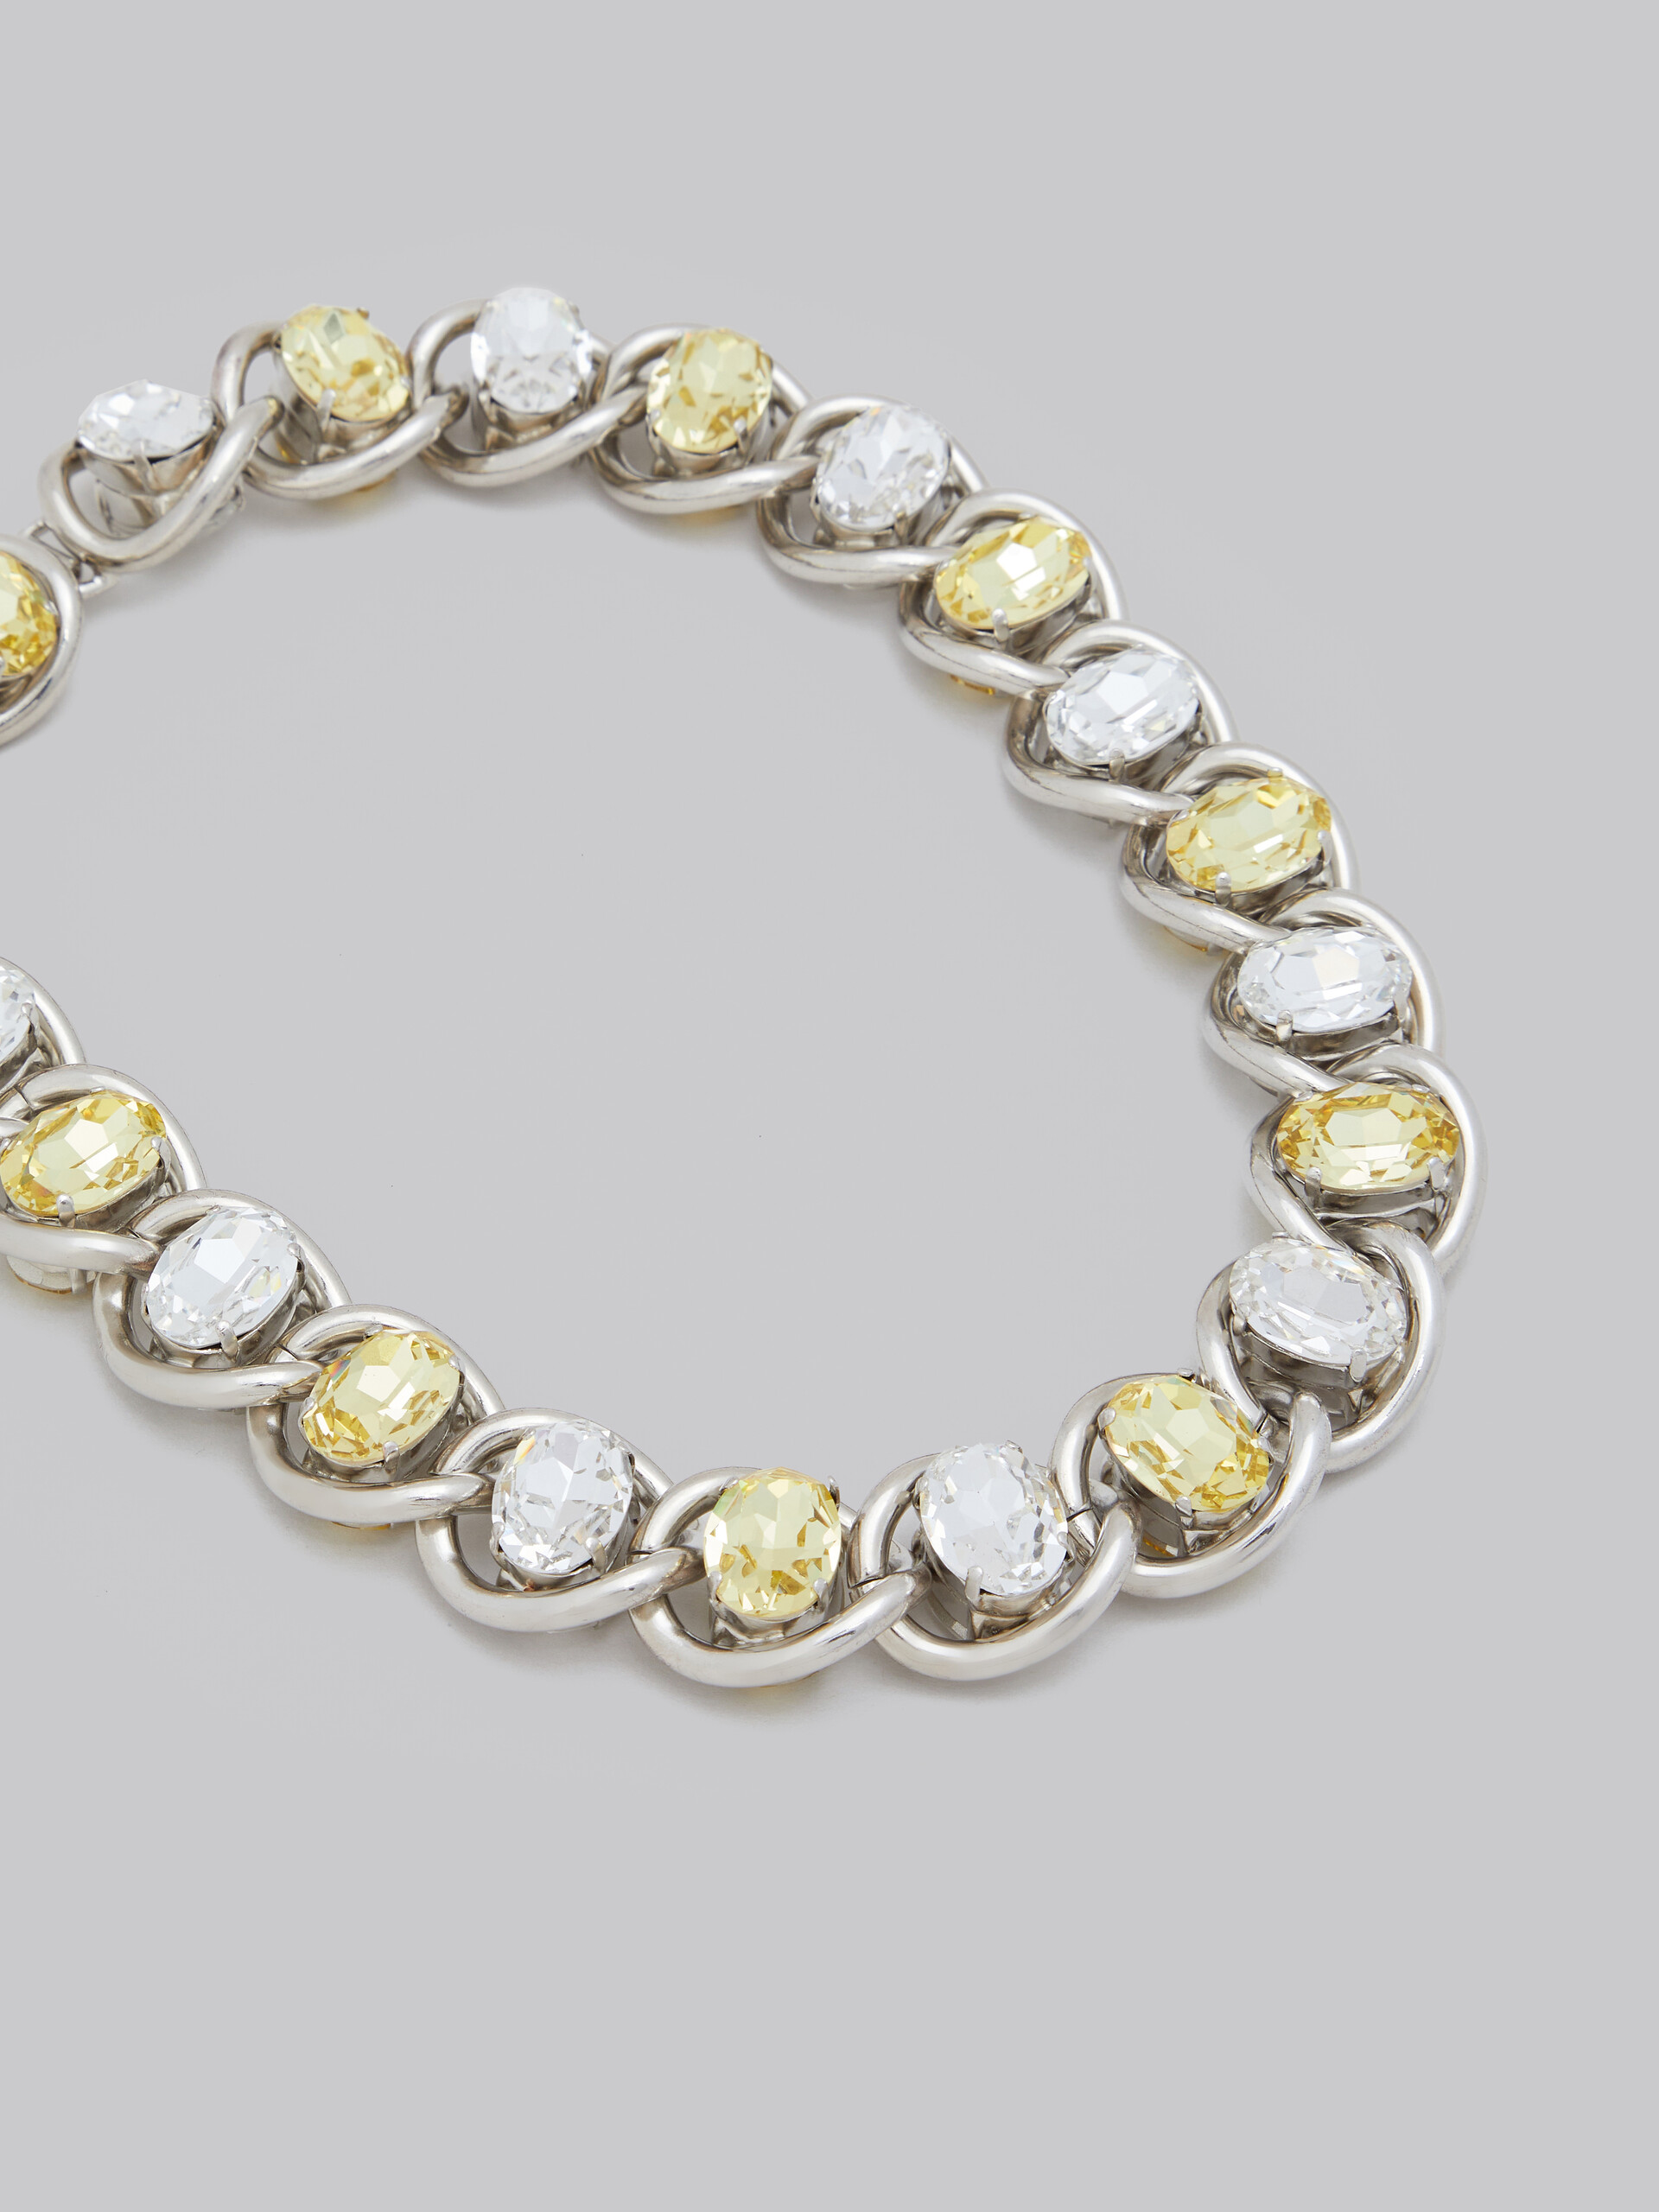 Collar grueso de cadena con strass transparente y amarillo - Collares - Image 3